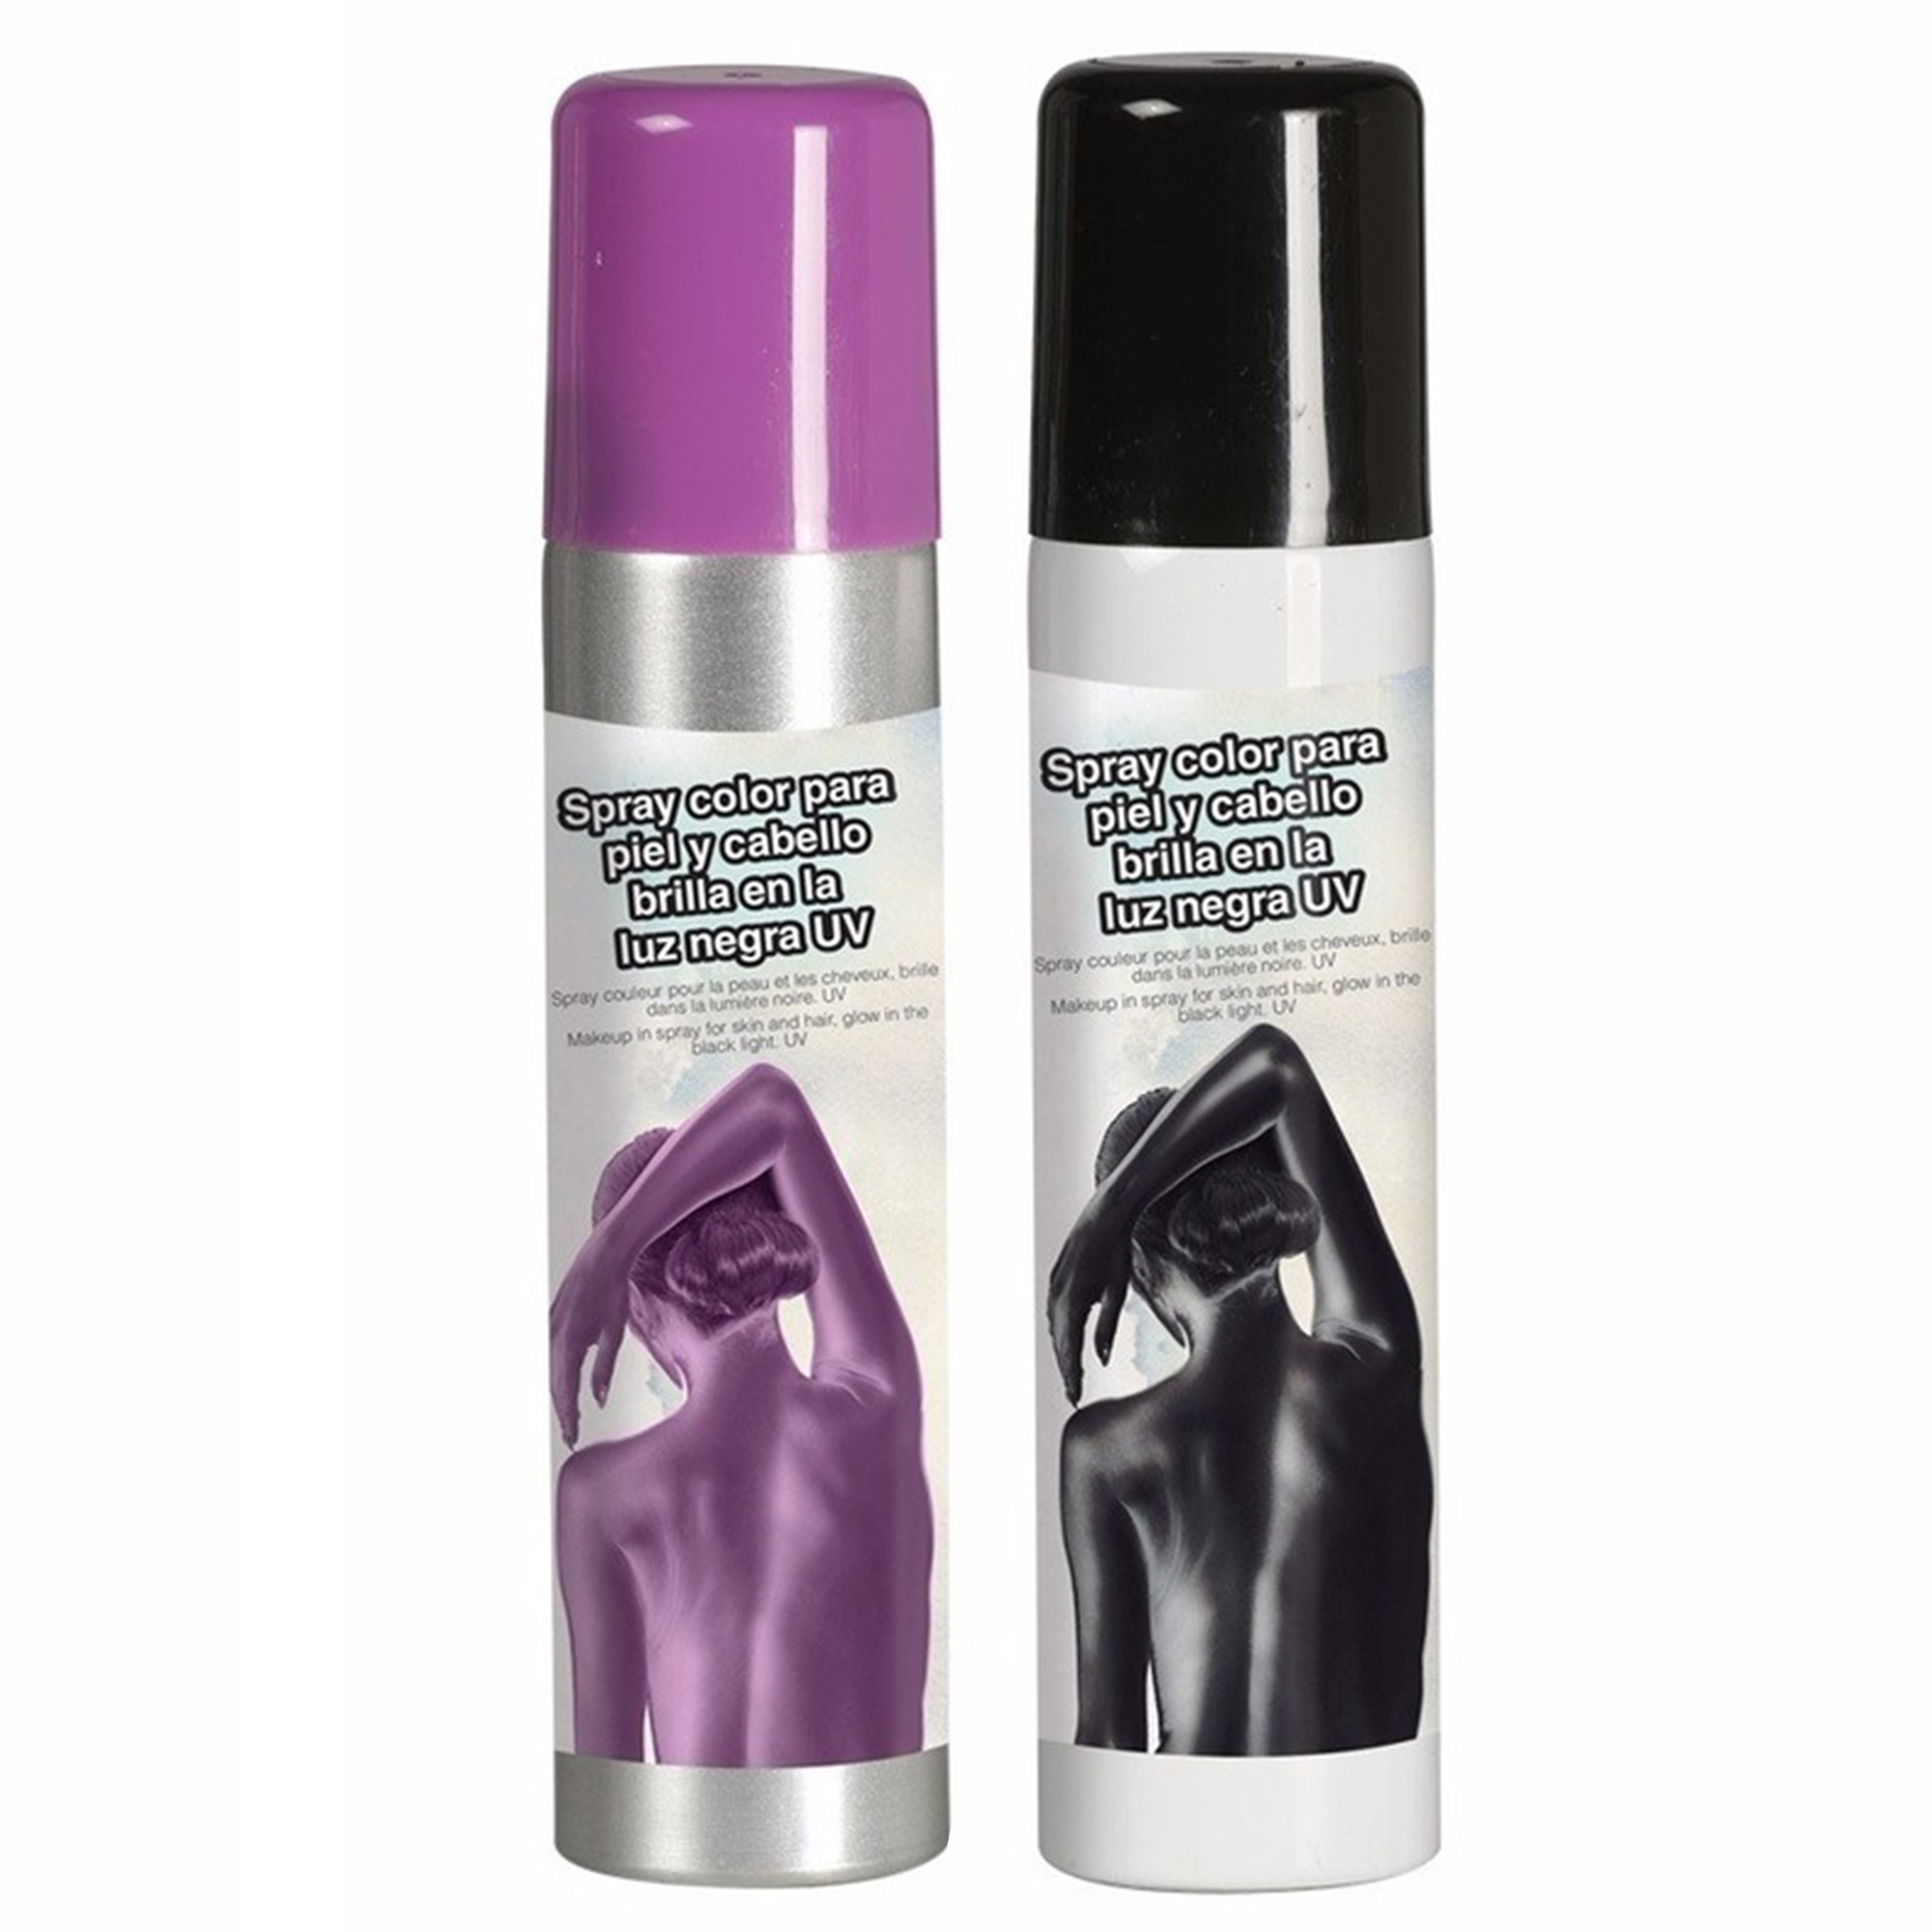 Toppers Guirca Haarspray-bodypaint spray 2x kleuren paars en zwart 75 ml